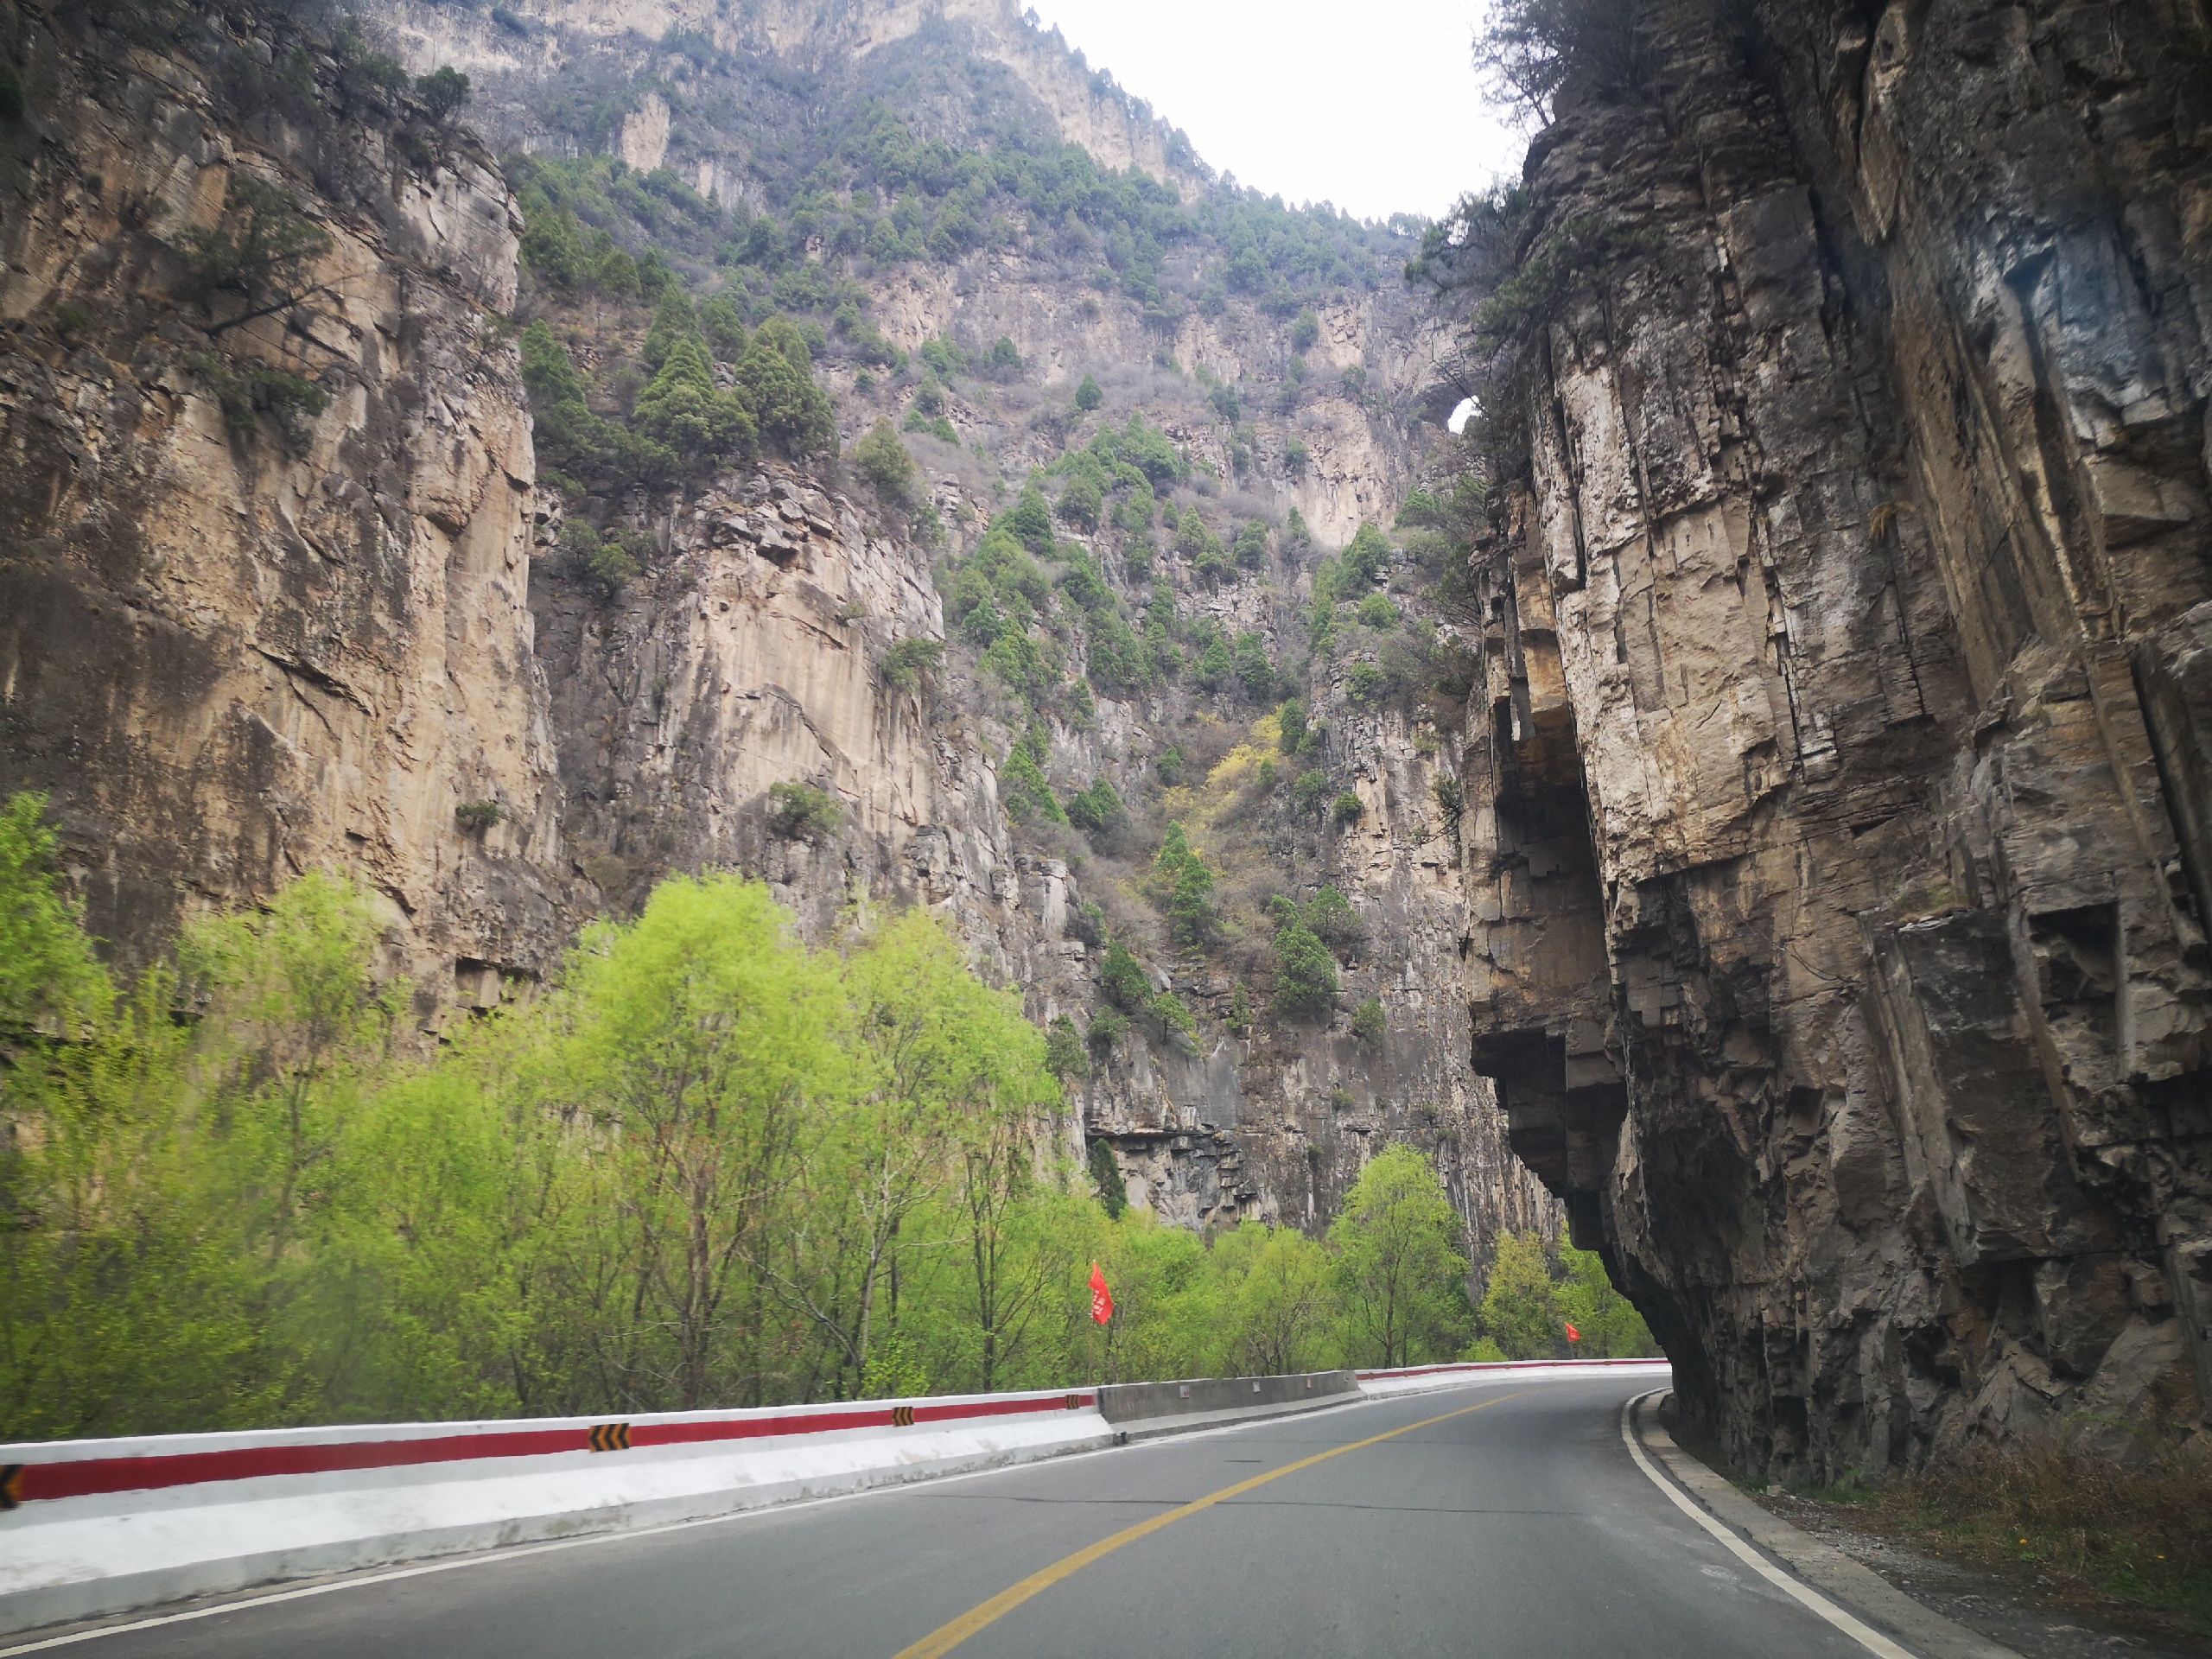 太行山大峡谷八泉峡景区长治周边的旅游景点多以峡谷和奇特的地势风貌为主